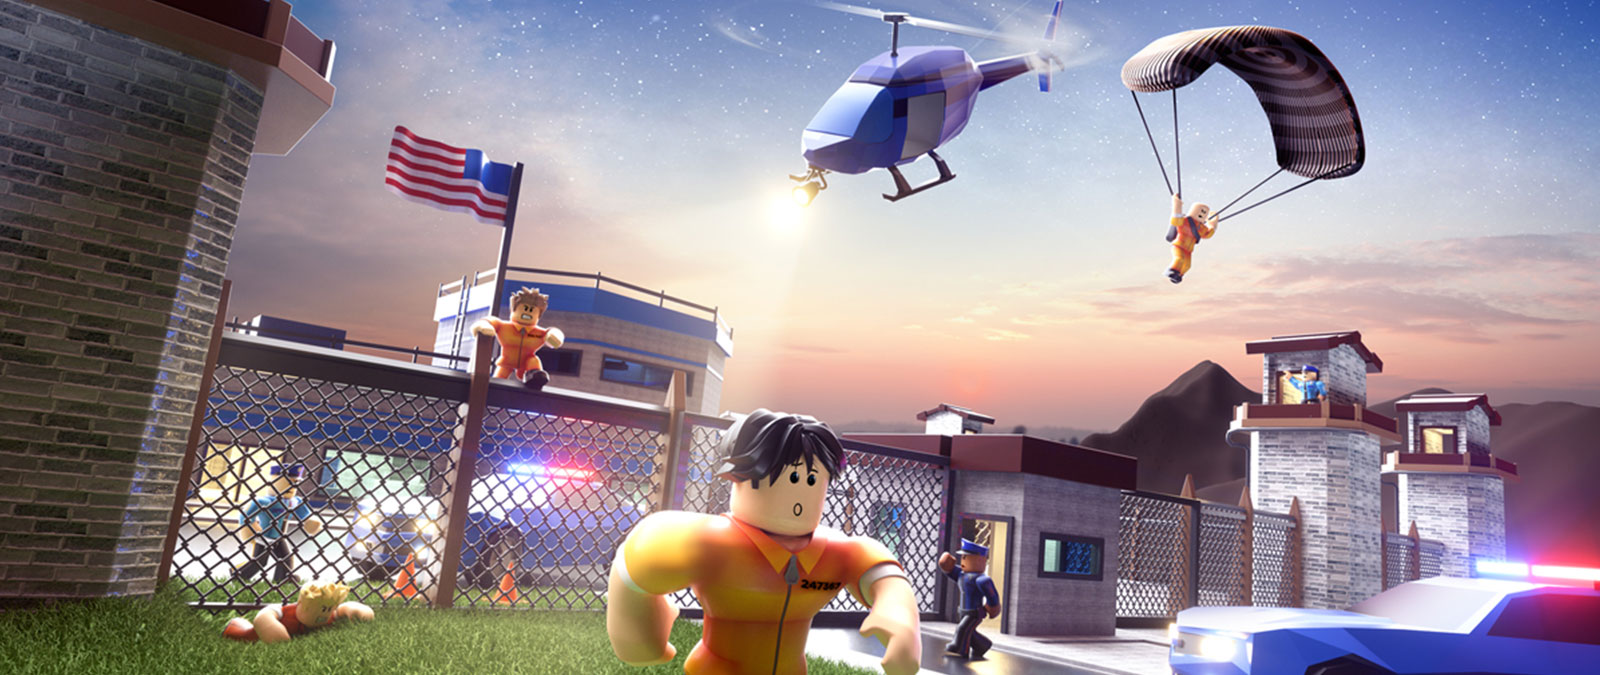 Roblox-hahmot pakenevat vankilasta poliisin ajaessa heitä takaa Jailbreak-pelissä